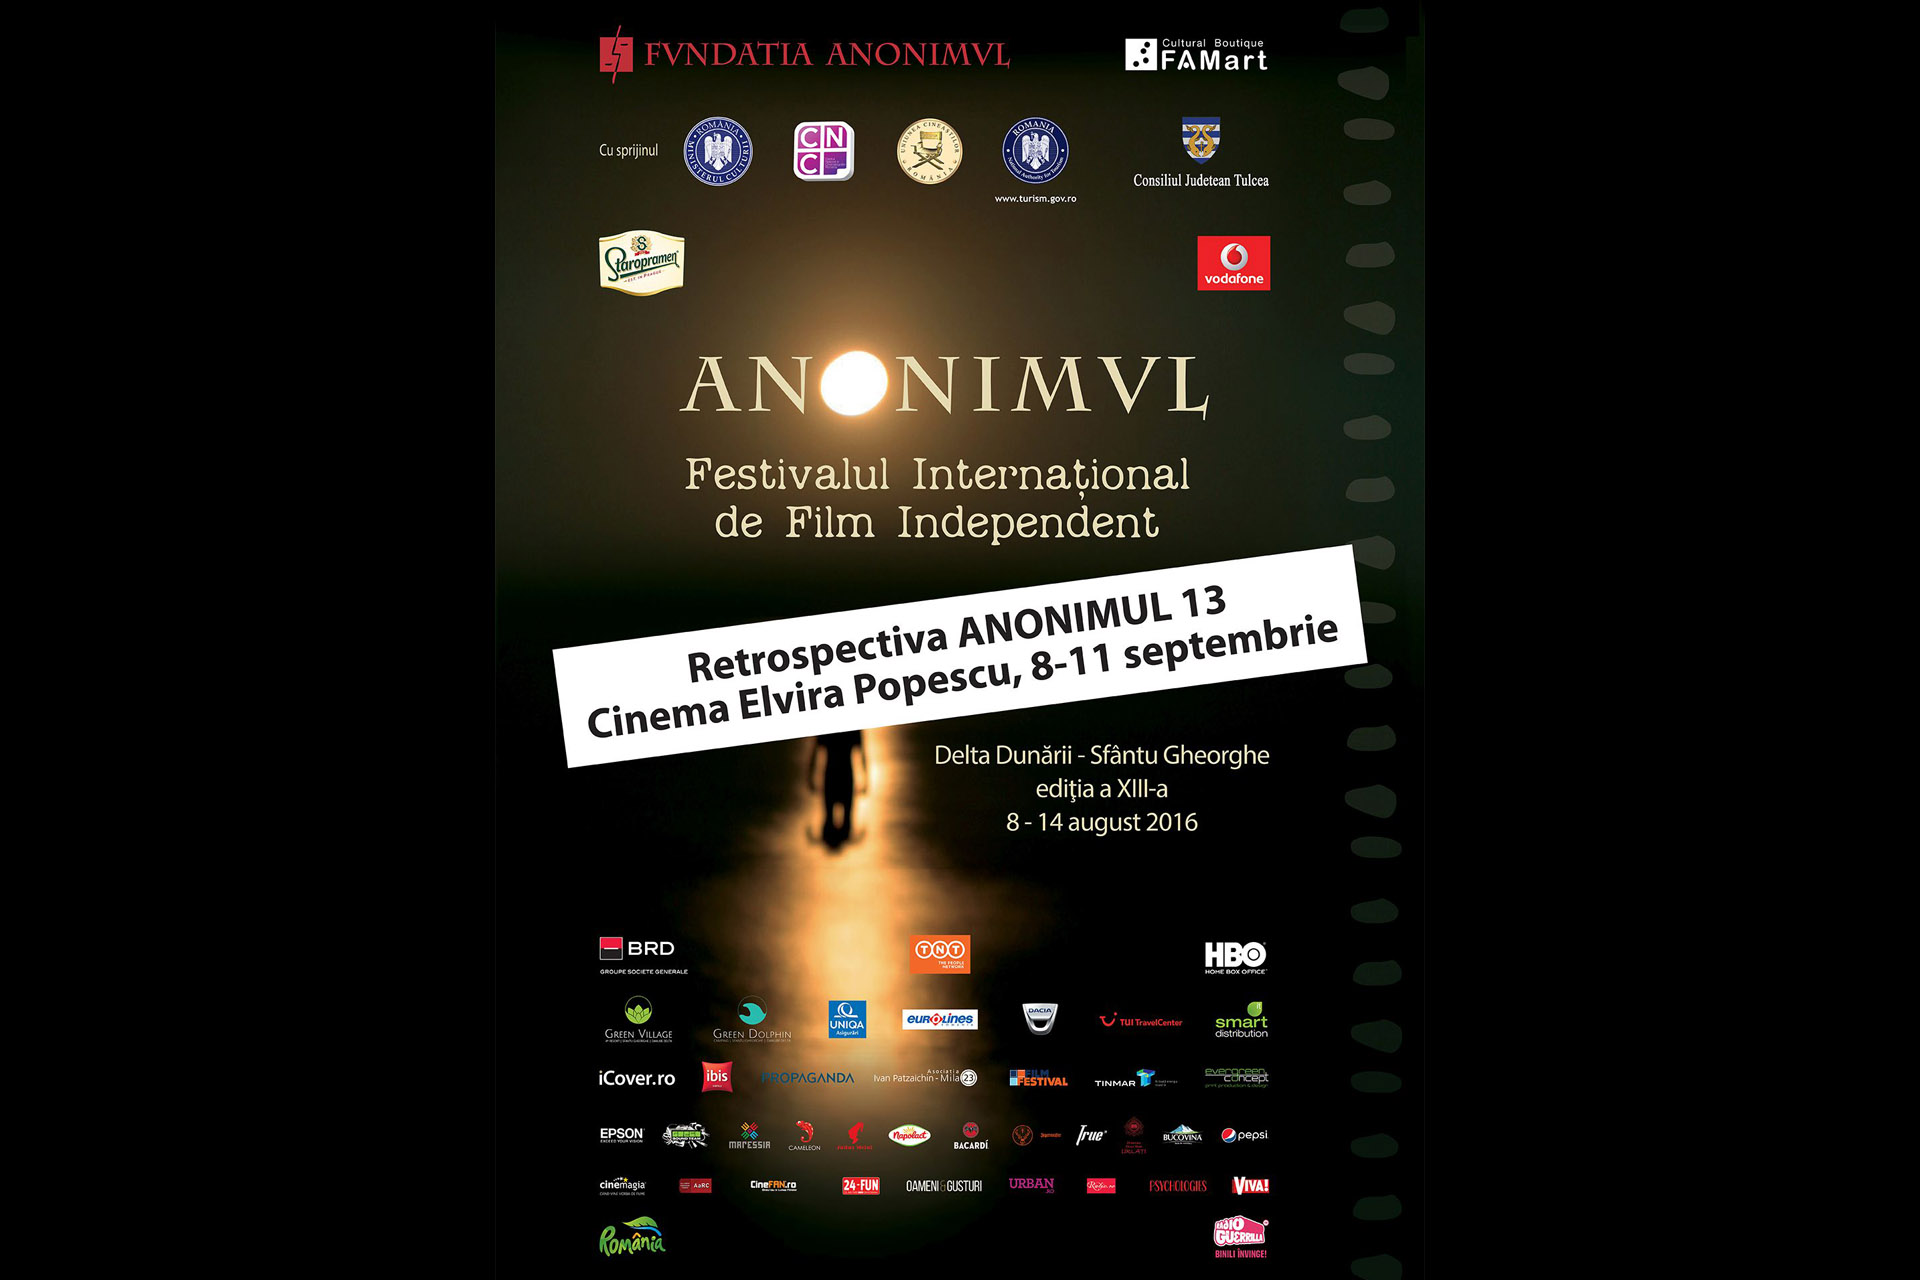 anonimul_festival_international_film_independent_anonimul_2016_cavaleria